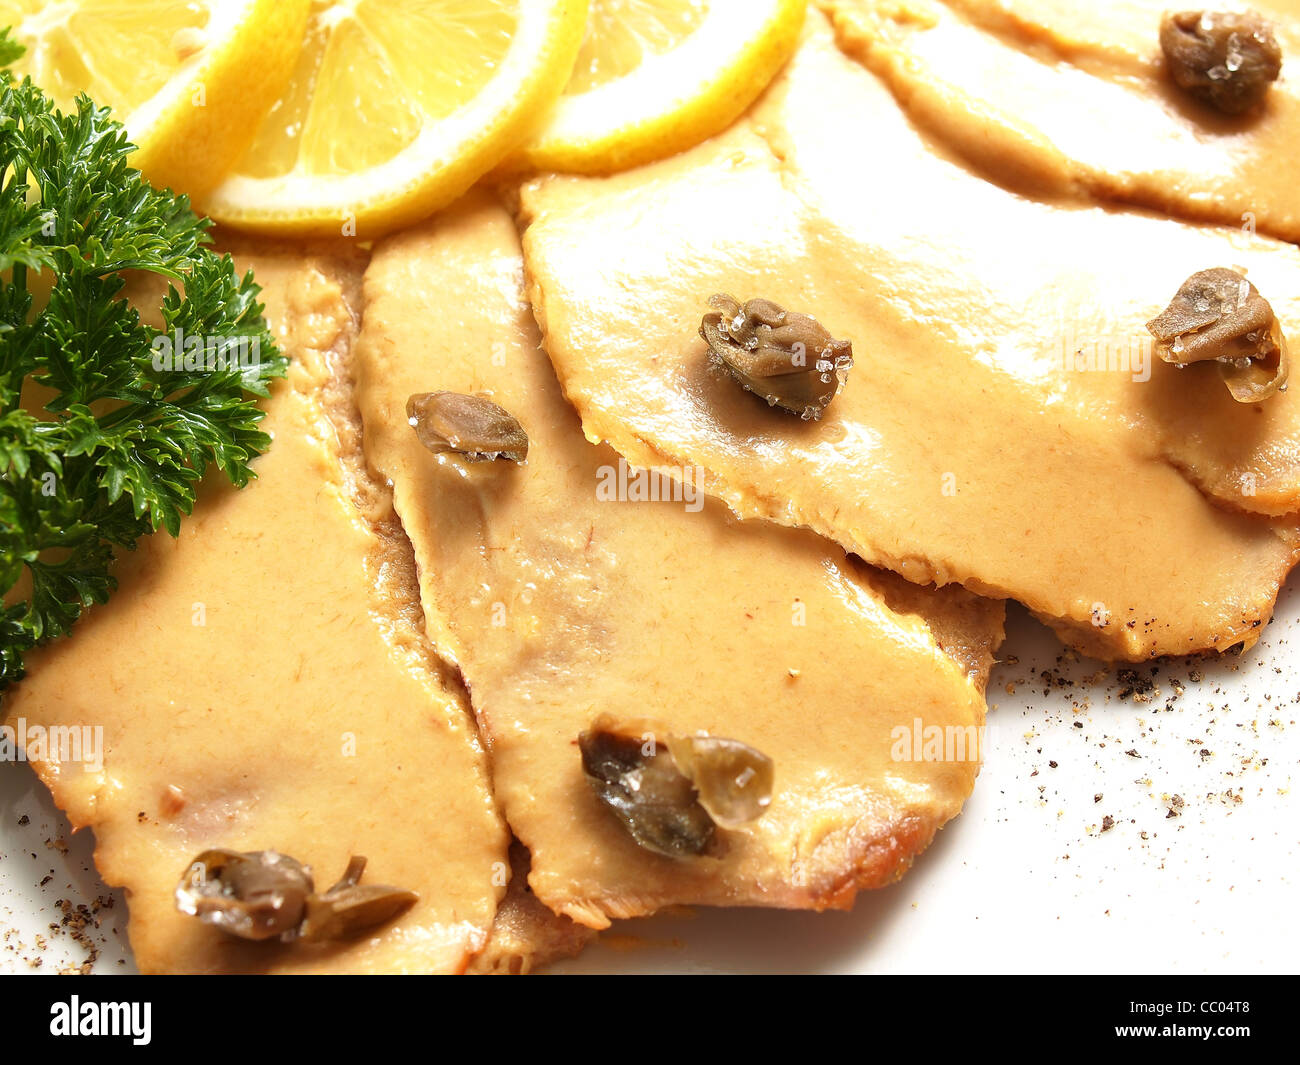 Vitello Tonnato - Kalbfleisch mit Thunfischsauce Stockfotografie - Alamy